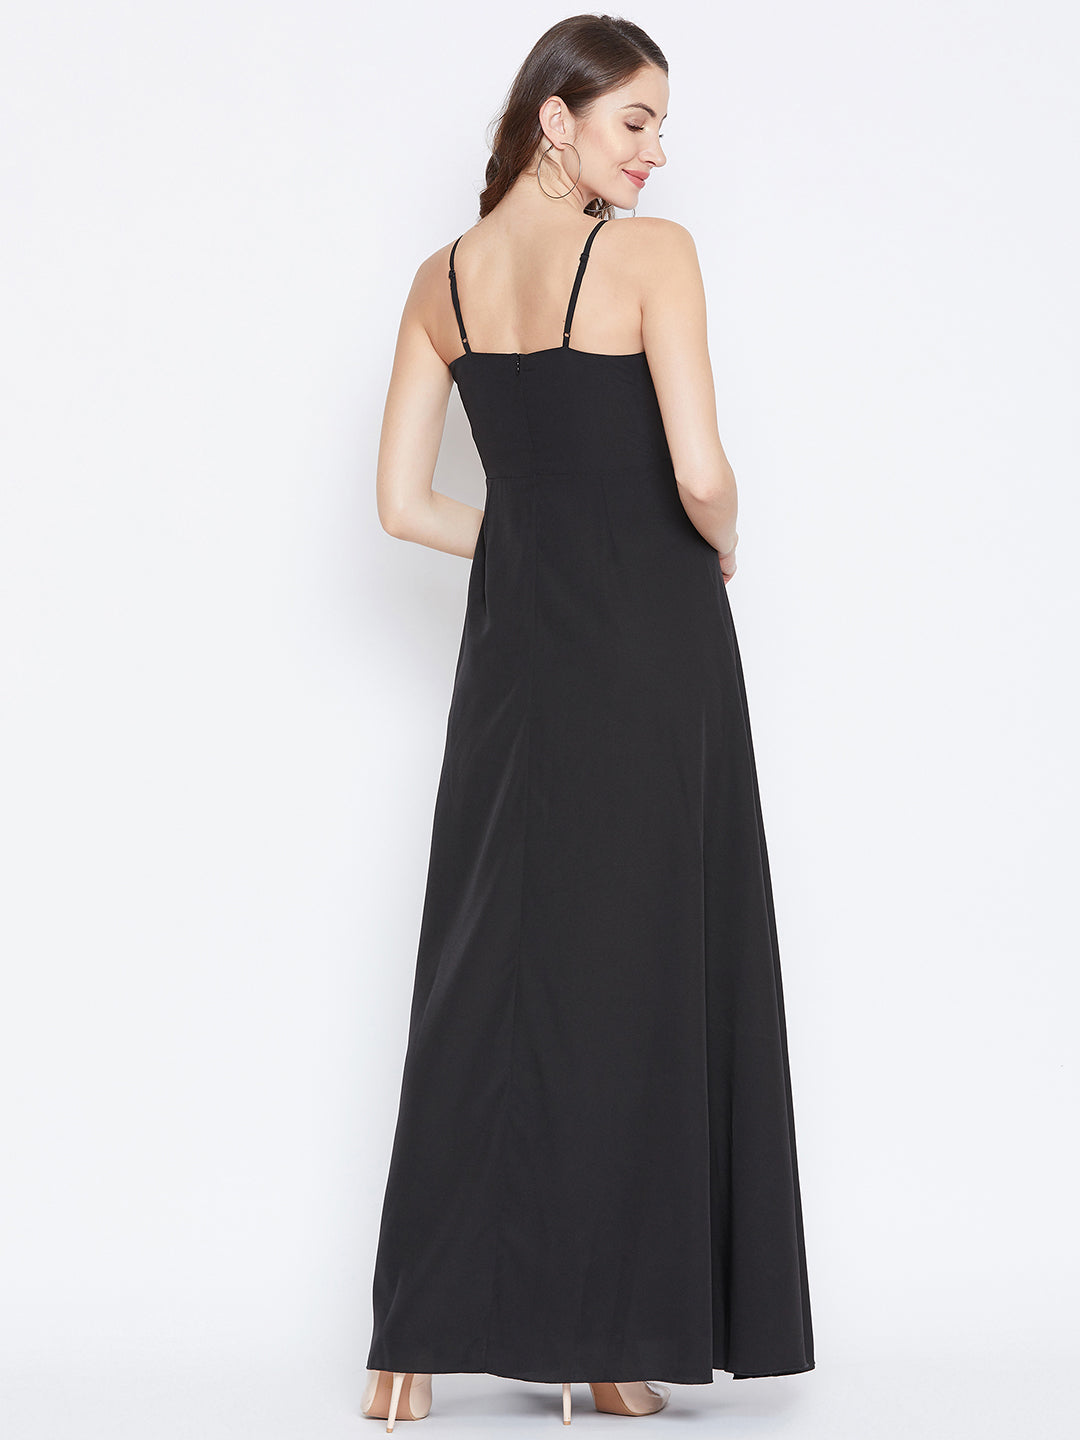 solid black maxi dress